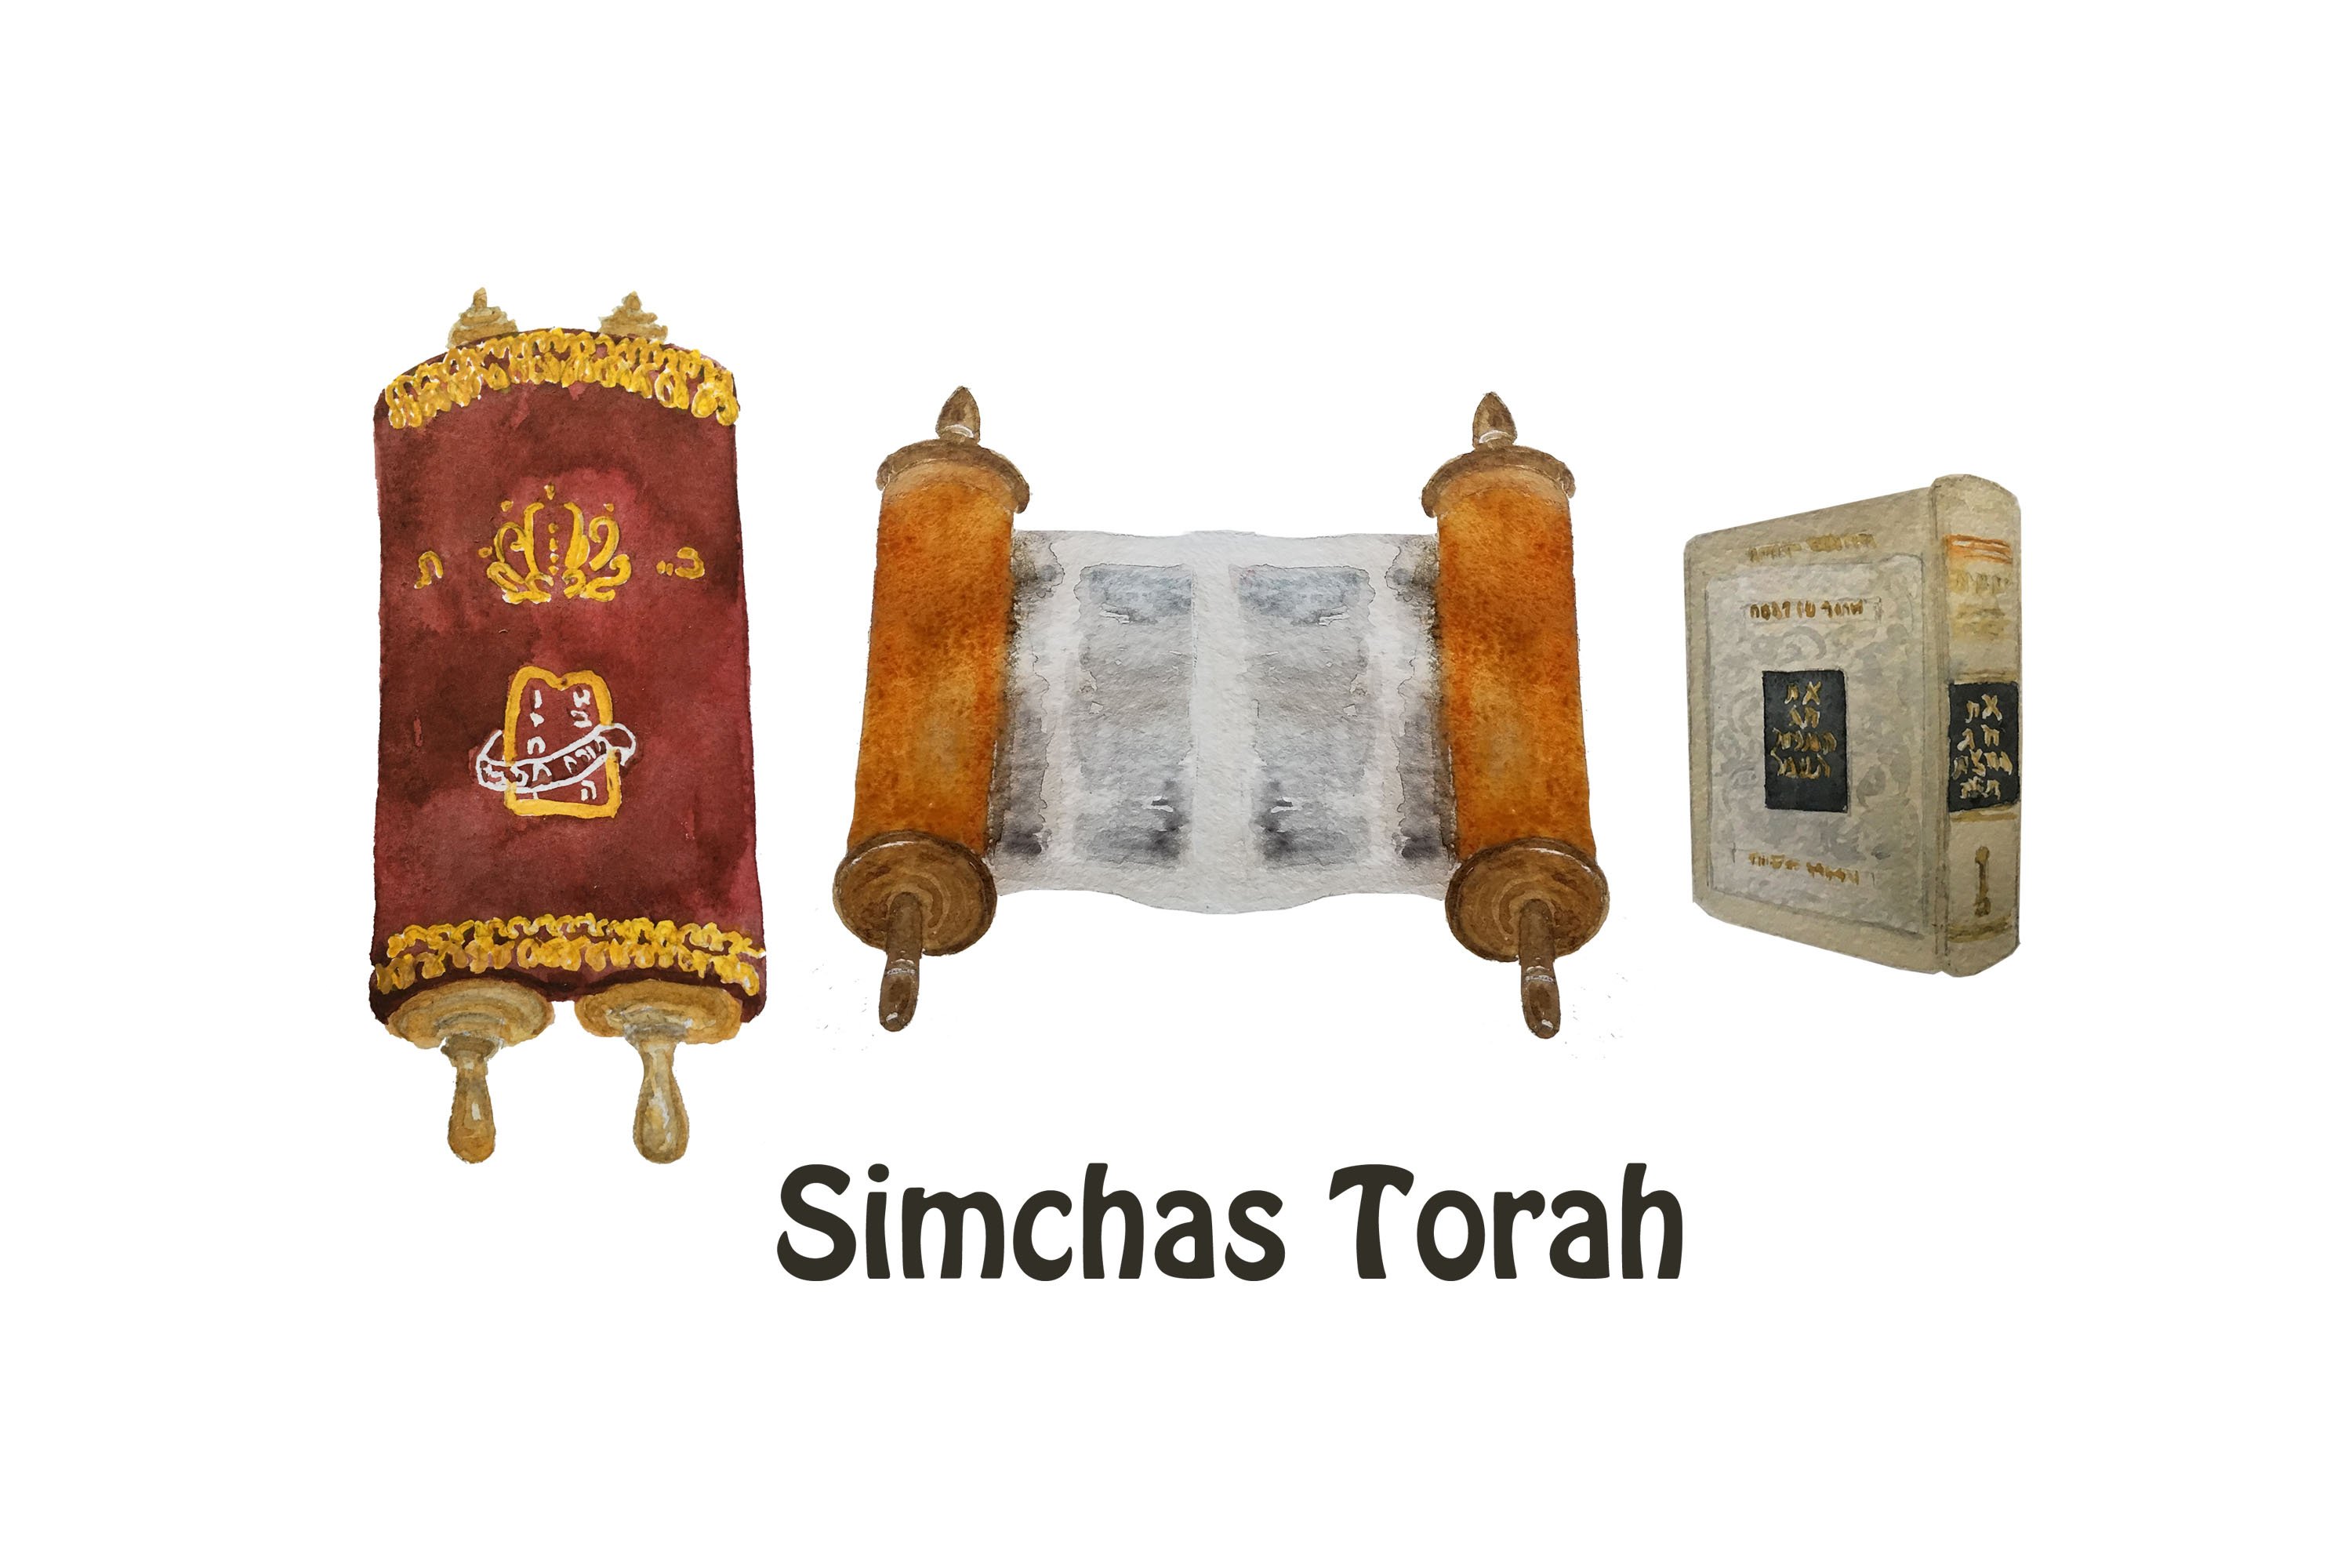 Simchas torah elements.